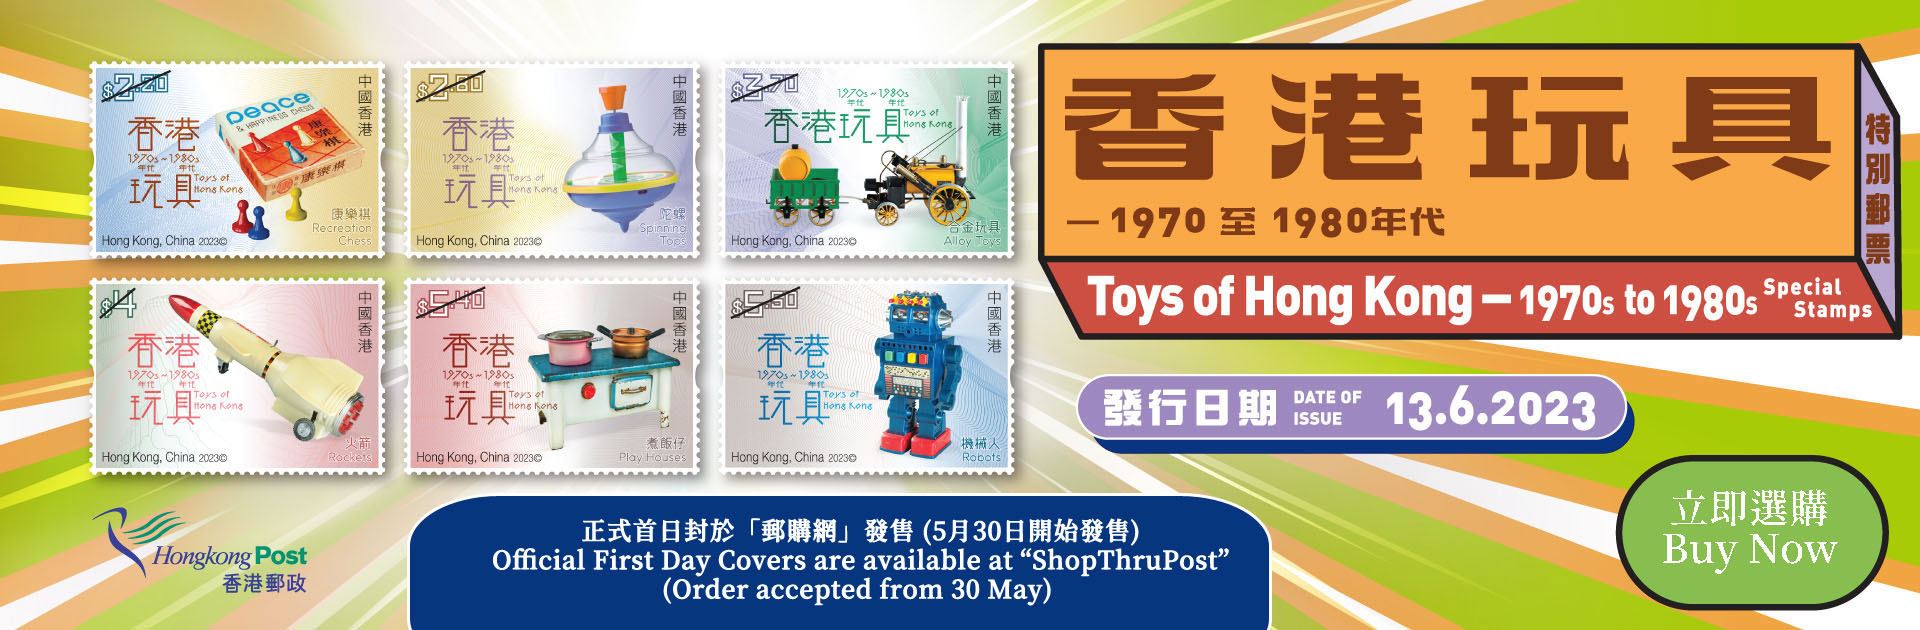 香港郵政發行「香港玩具 1970 至 1980 年代」特別郵票